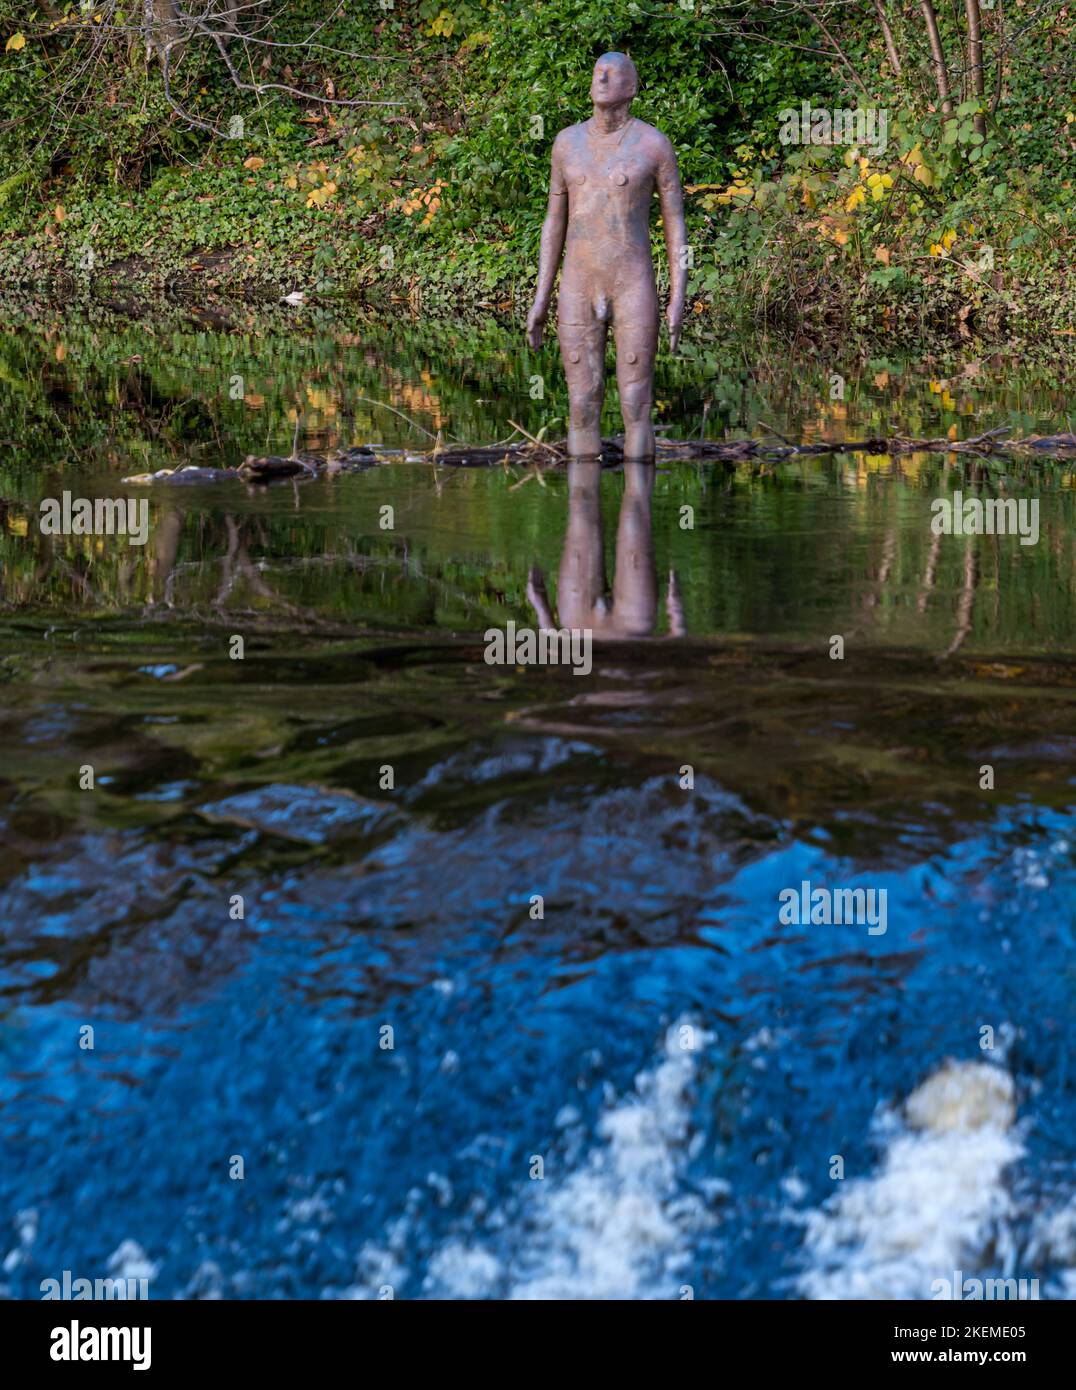 Anthony Gormley statue d'homme nu reflétée dans l'eau de la rivière Leith par le weir, Édimbourg, Écosse, Royaume-Uni Banque D'Images